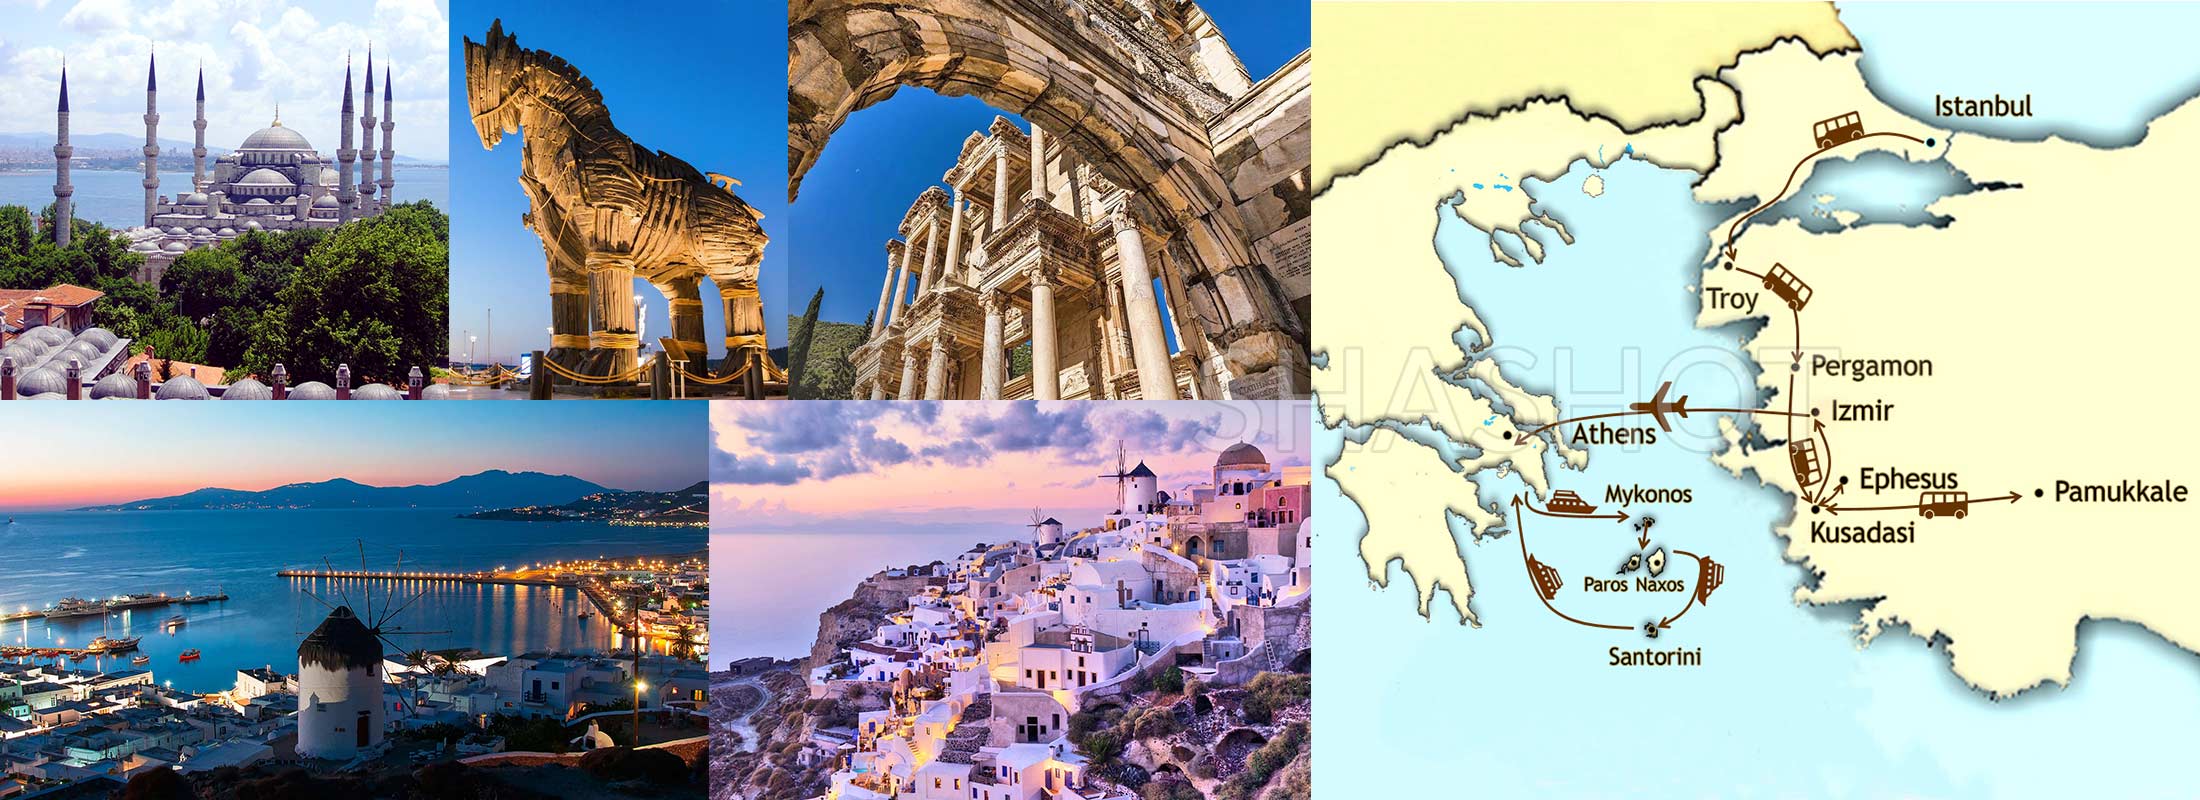 naxos-greek-island-greece-turkey-package-tours